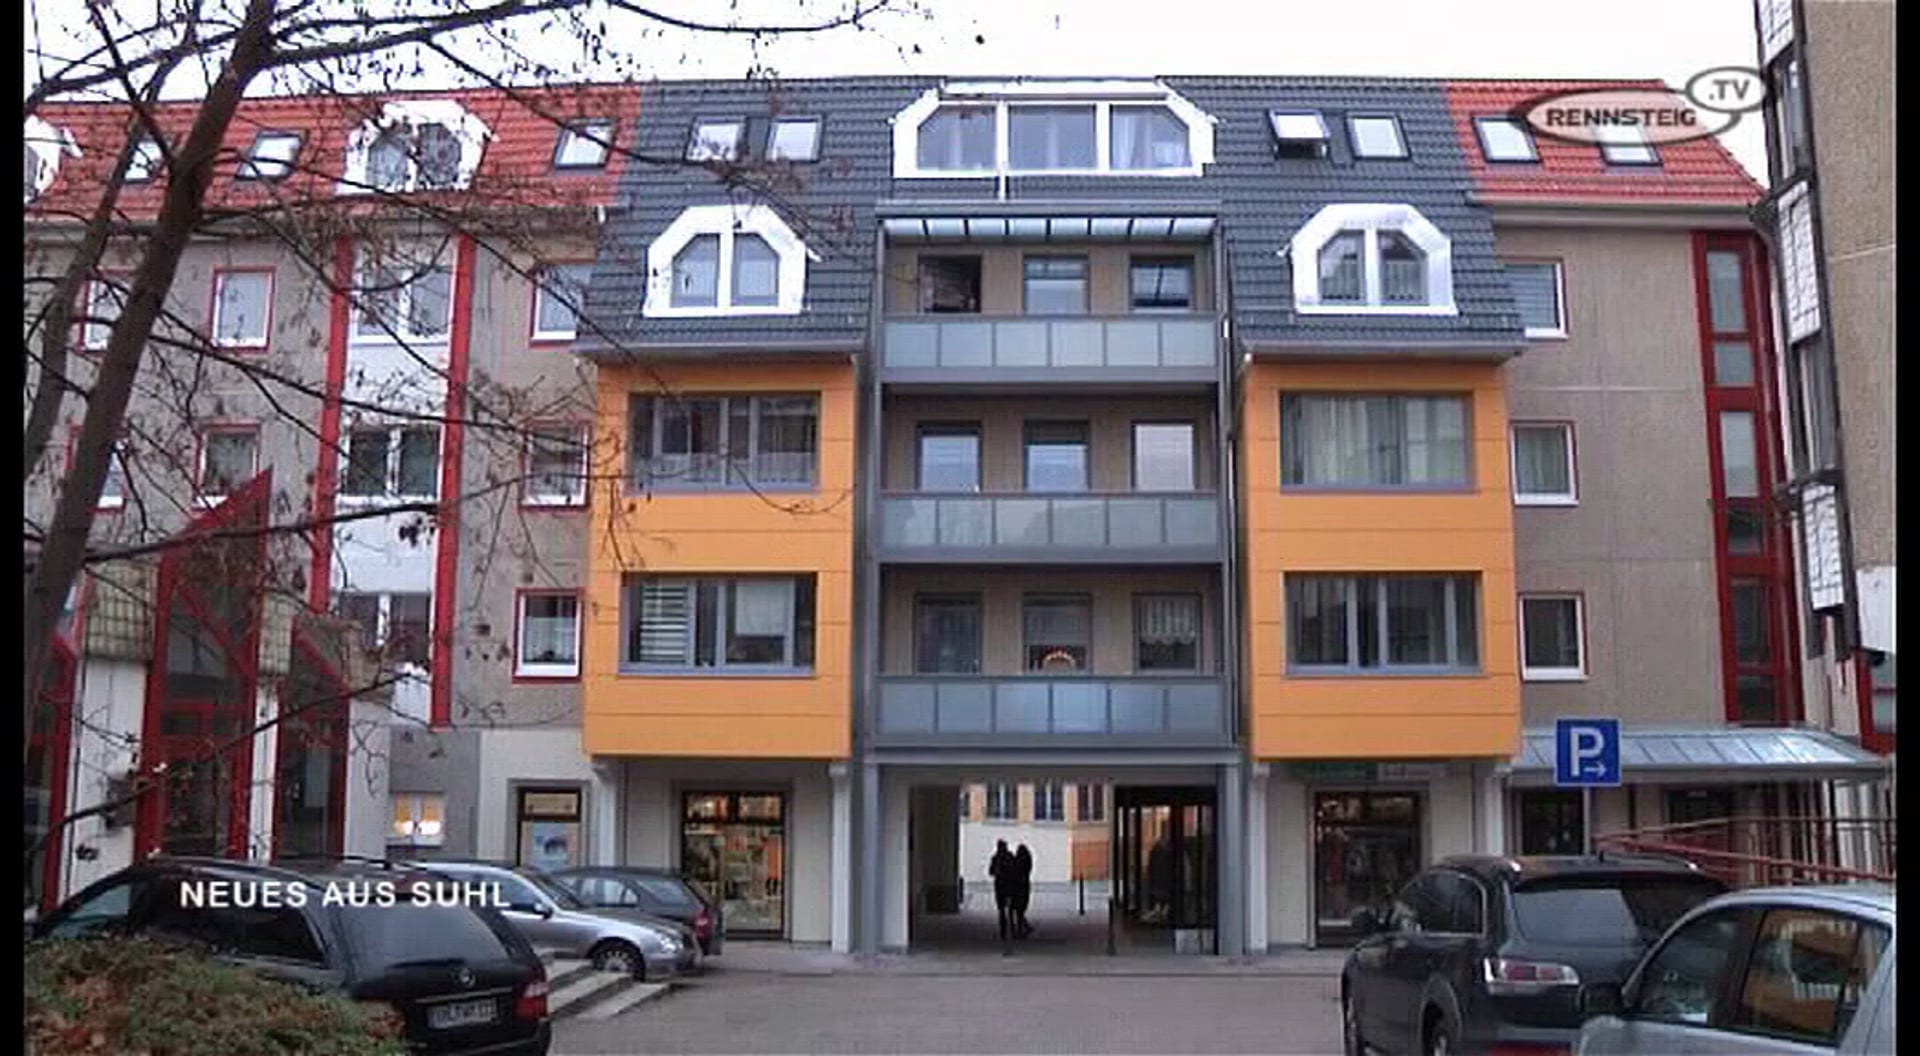 Neues aus Suhl - GeWo modernisierte Wohnhäuser am Topfmarkt - Rennsteig TV